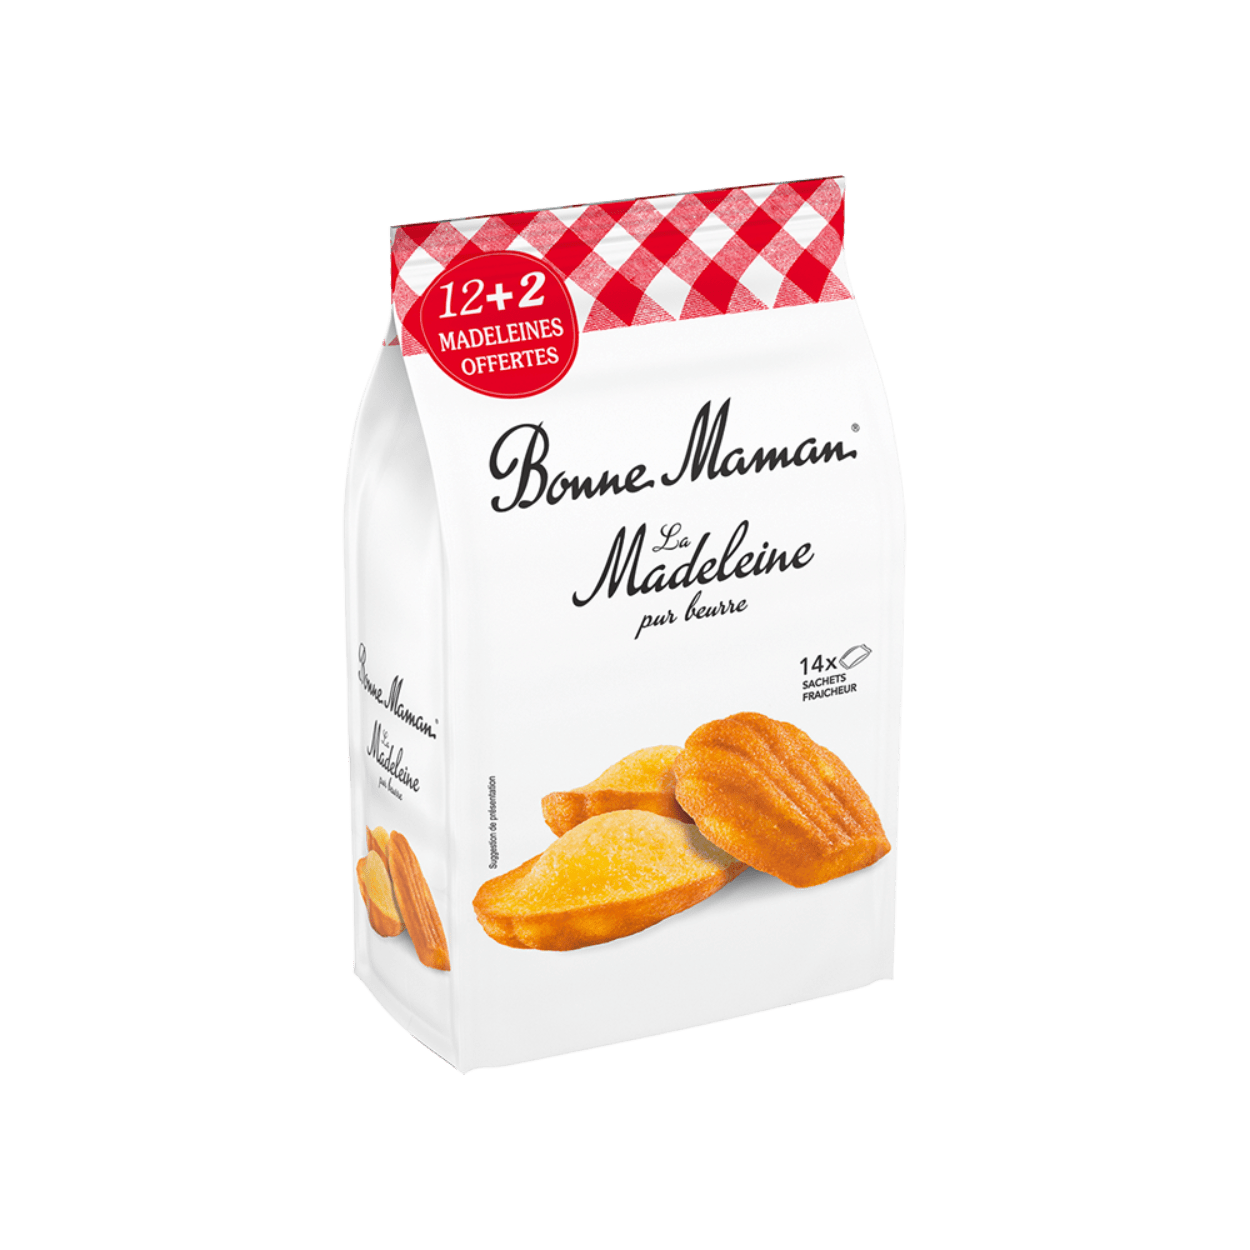 La Madeleine pur beurre - Bonne Maman